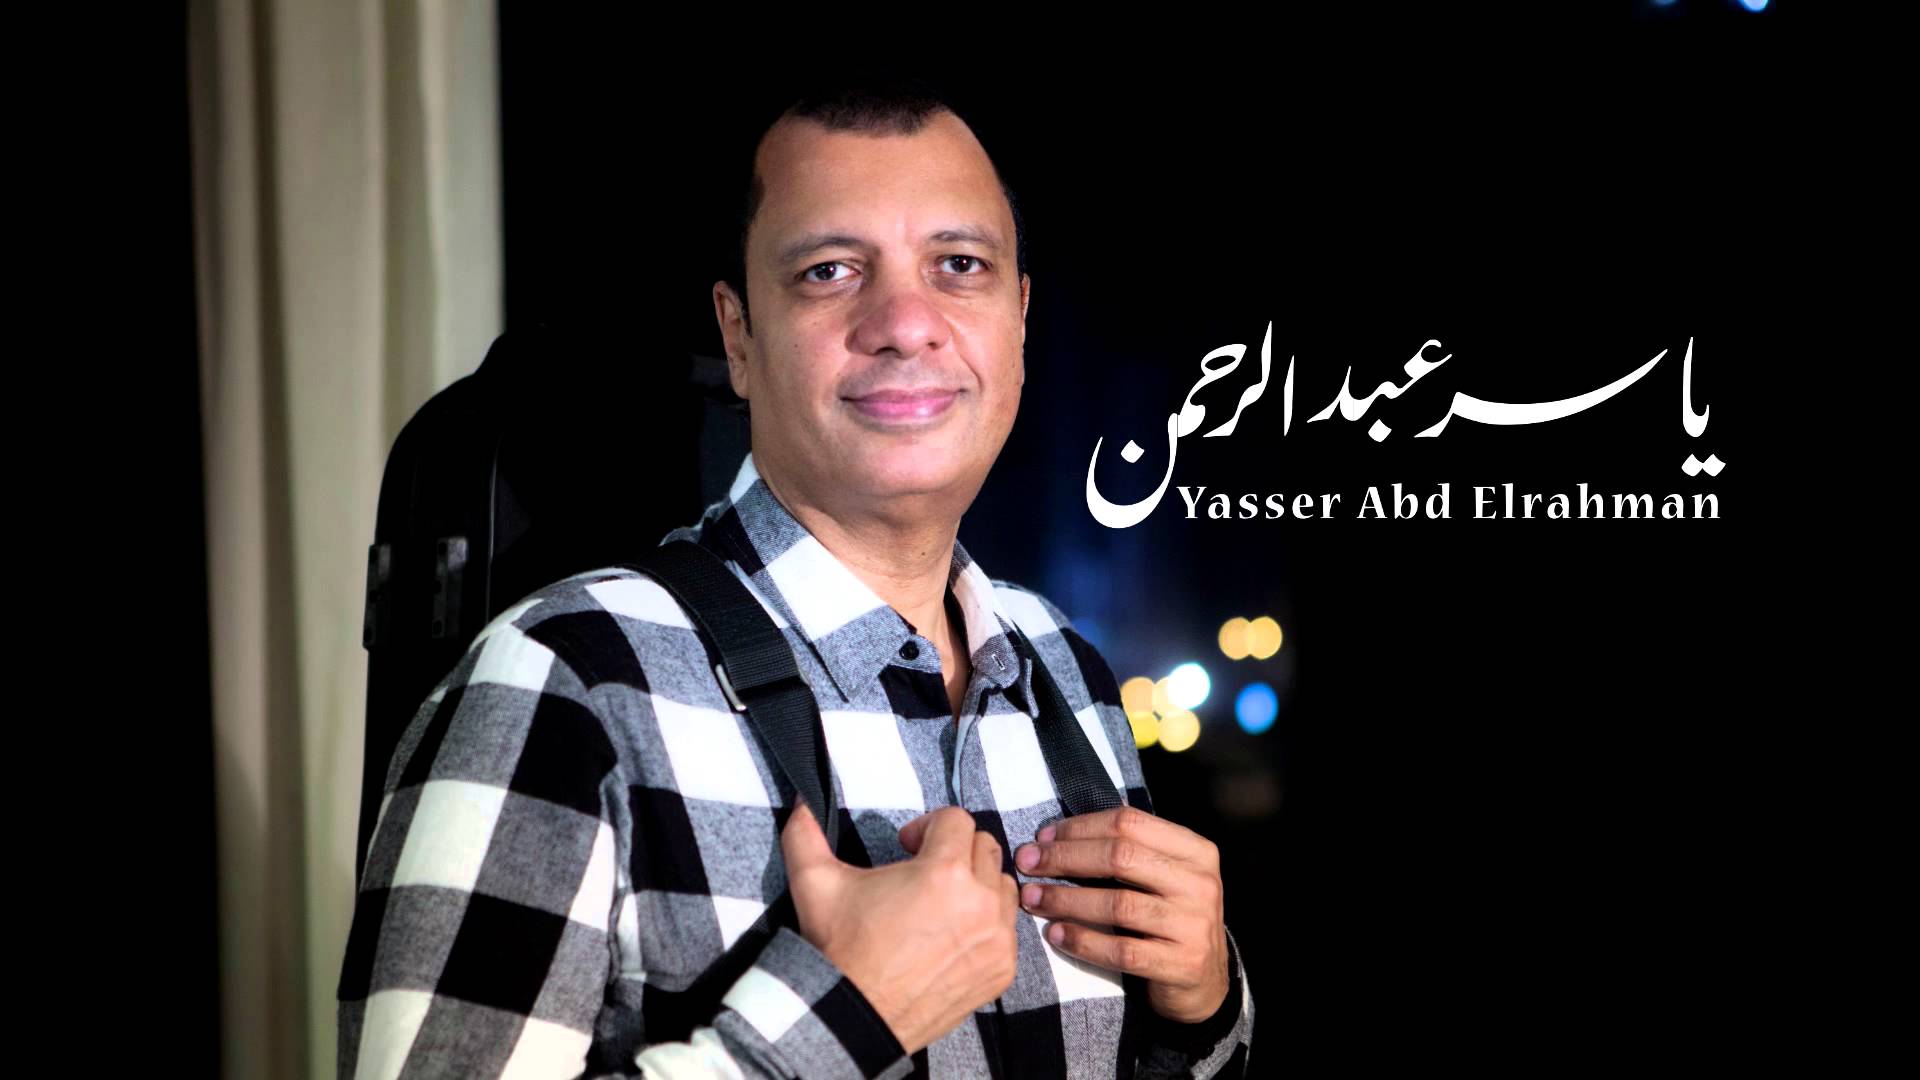 الموسيقار ياسر عبد الرحمن رئيسا للجنة تحكيم مهرجان ايام قرطاج الموسيقية